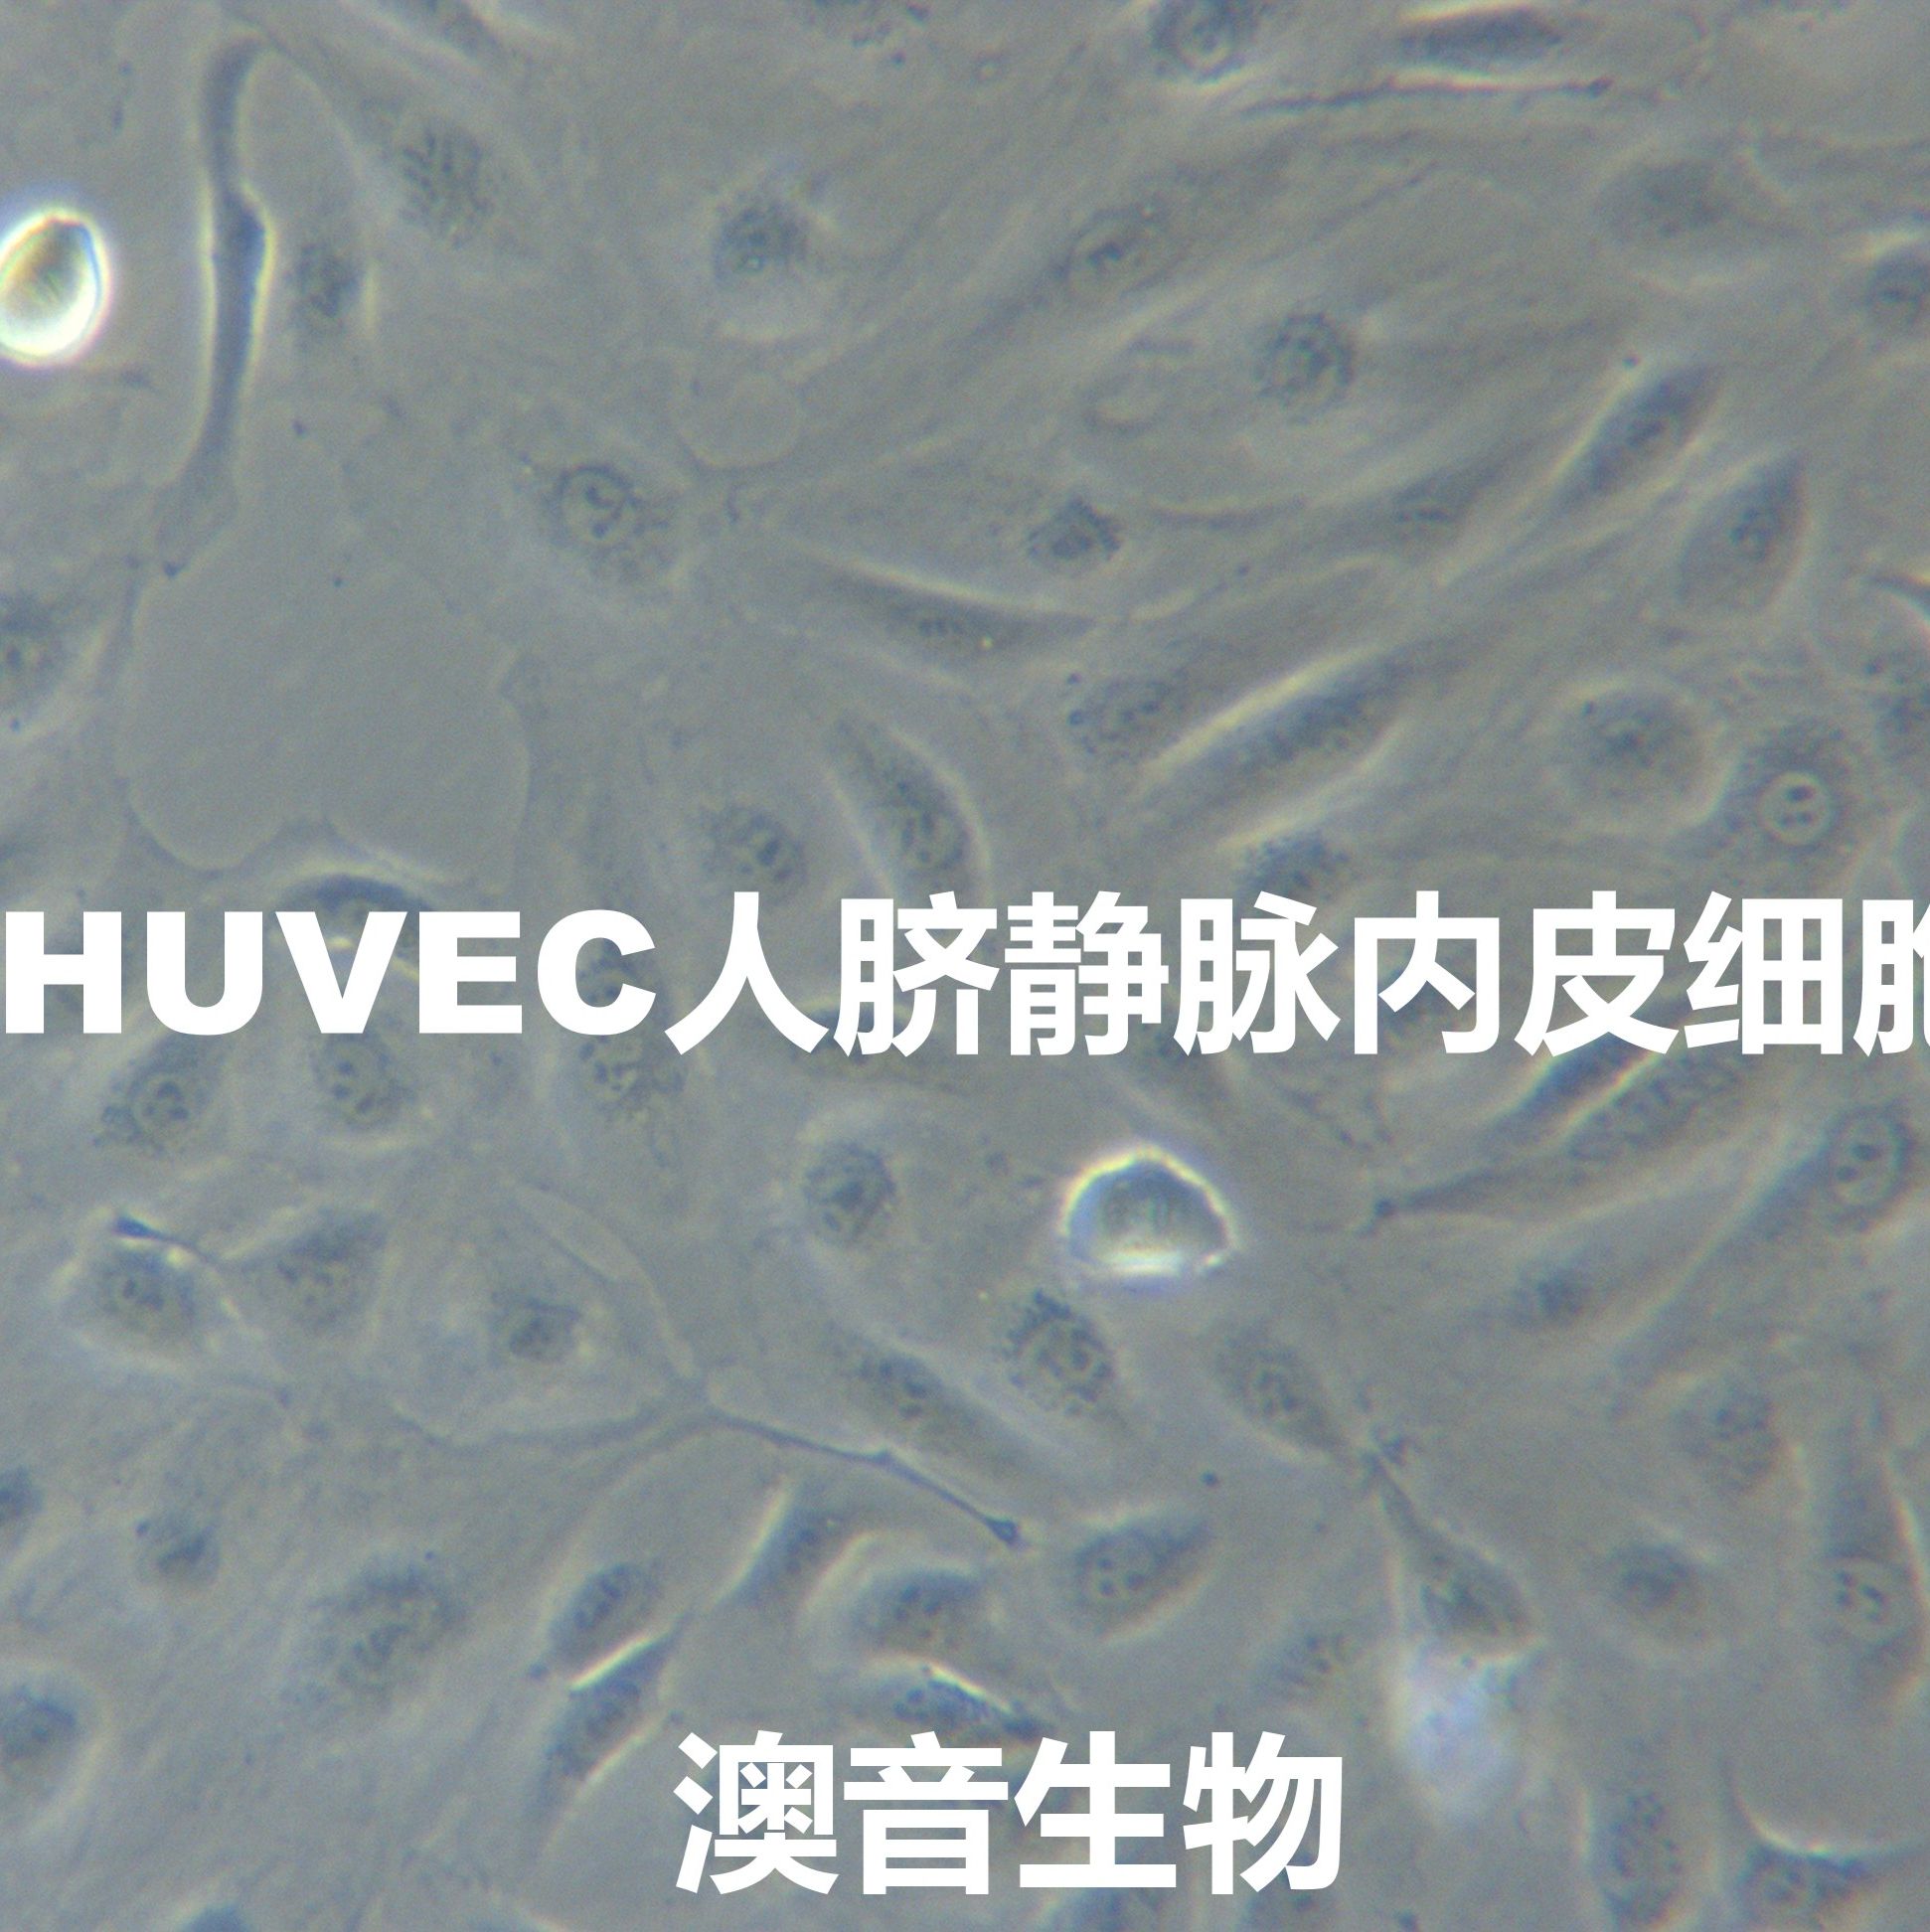 HUVEC【huvec；Huvec】人脐静脉内皮细胞